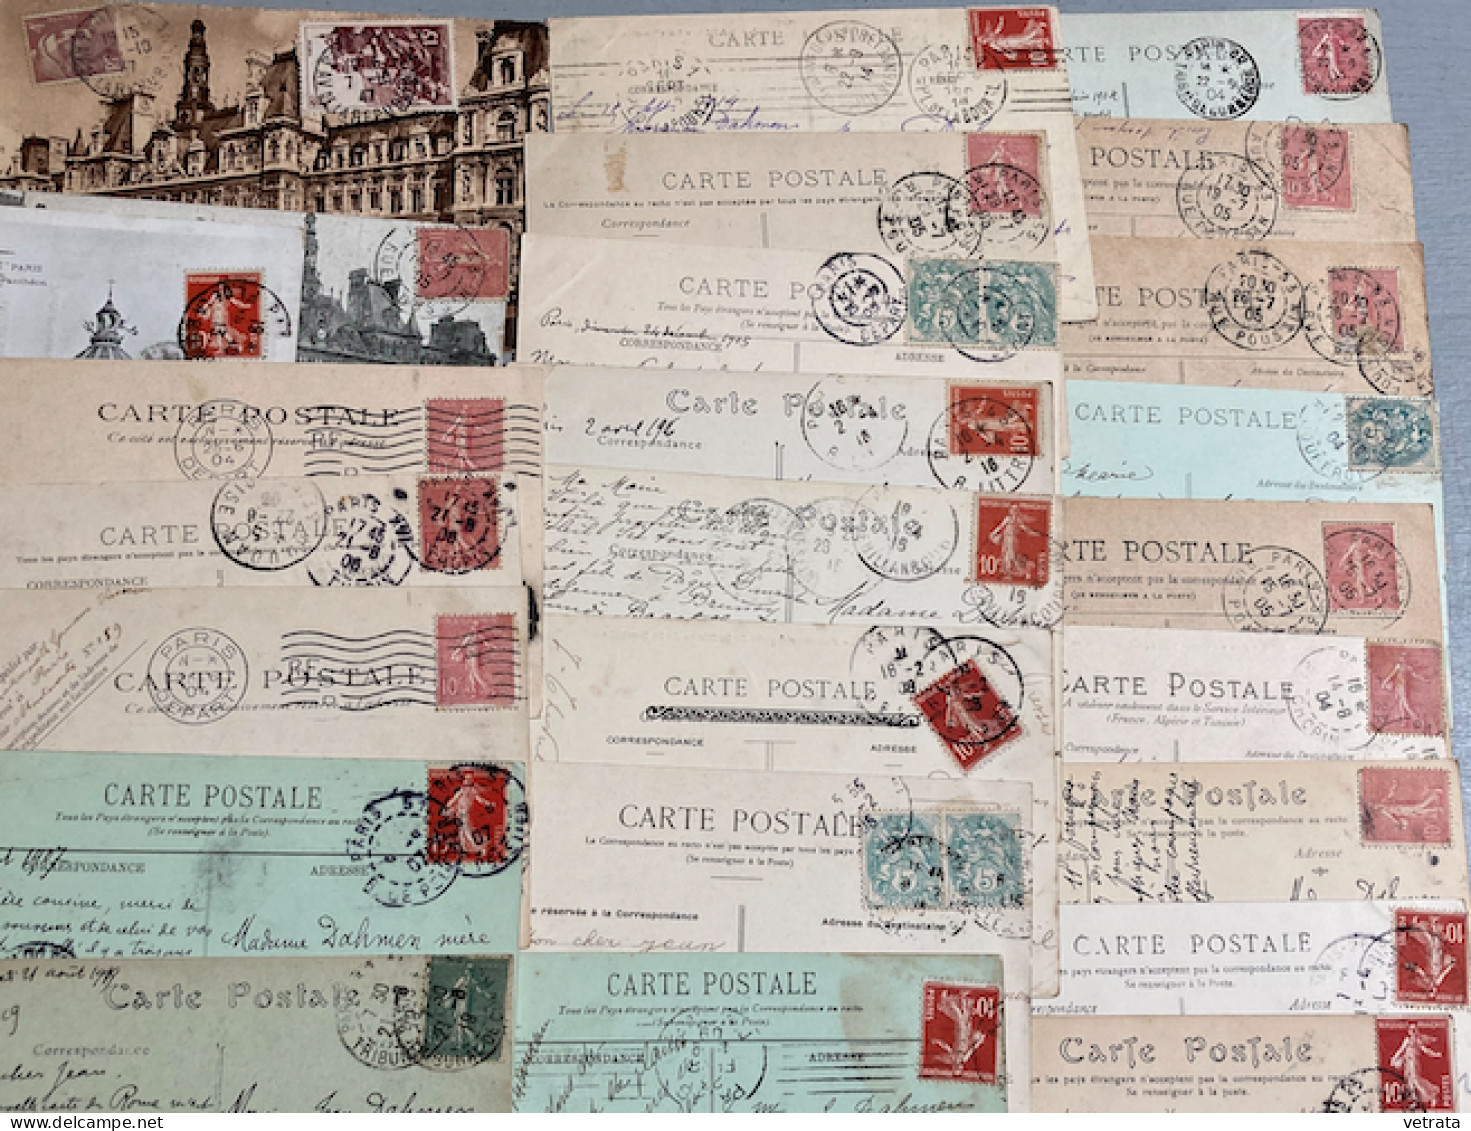 PARIS : 48 Cartes Postales (40 N&B - 8 Couleurs / 27 avec correspondance dont 25 sont affranchies / 21 n’ont pas circulé